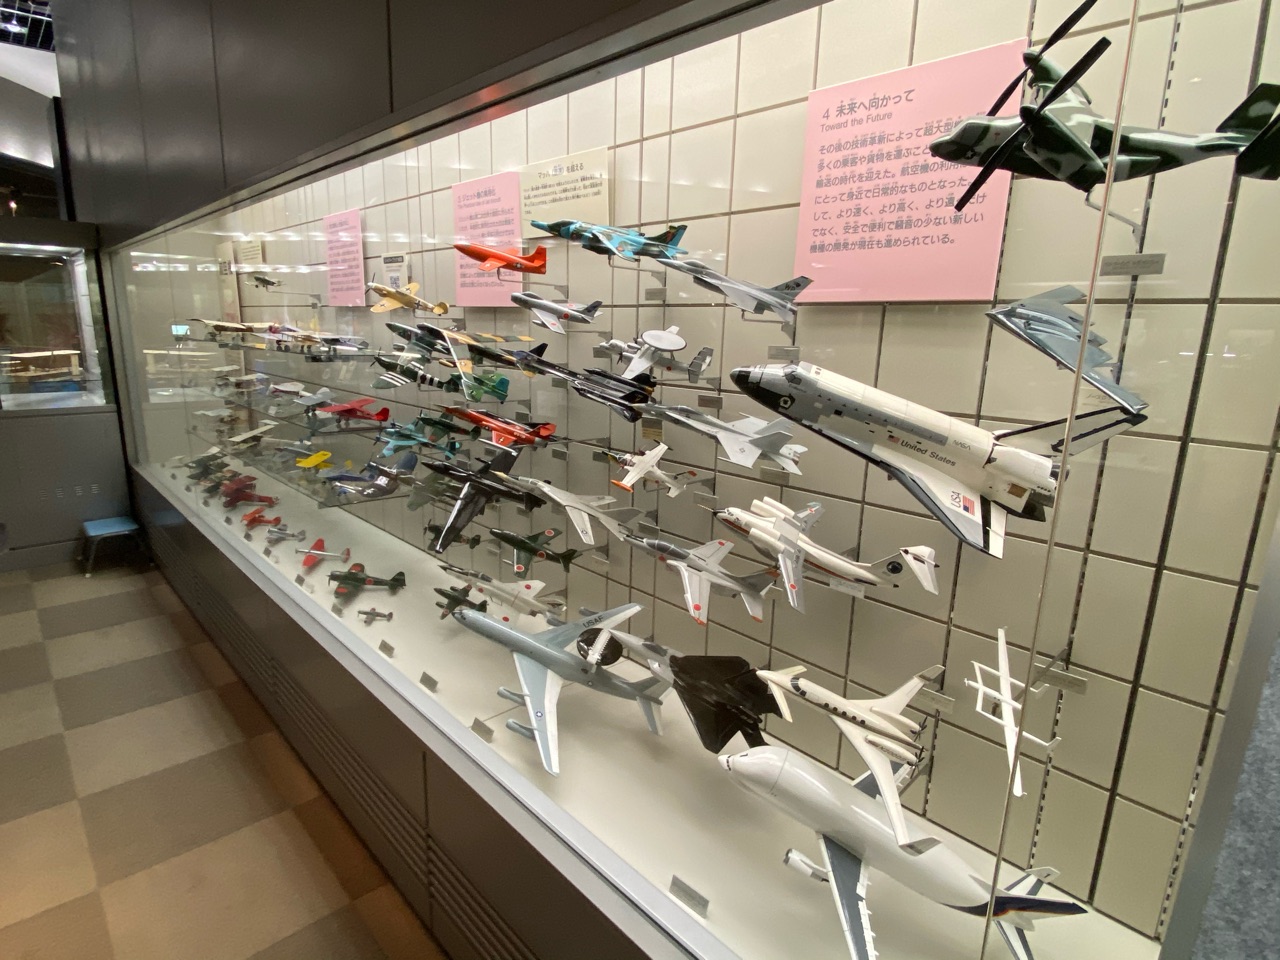 ヌマジ交通ミュージアム(広島市交通科学館)の飛行機模型展示